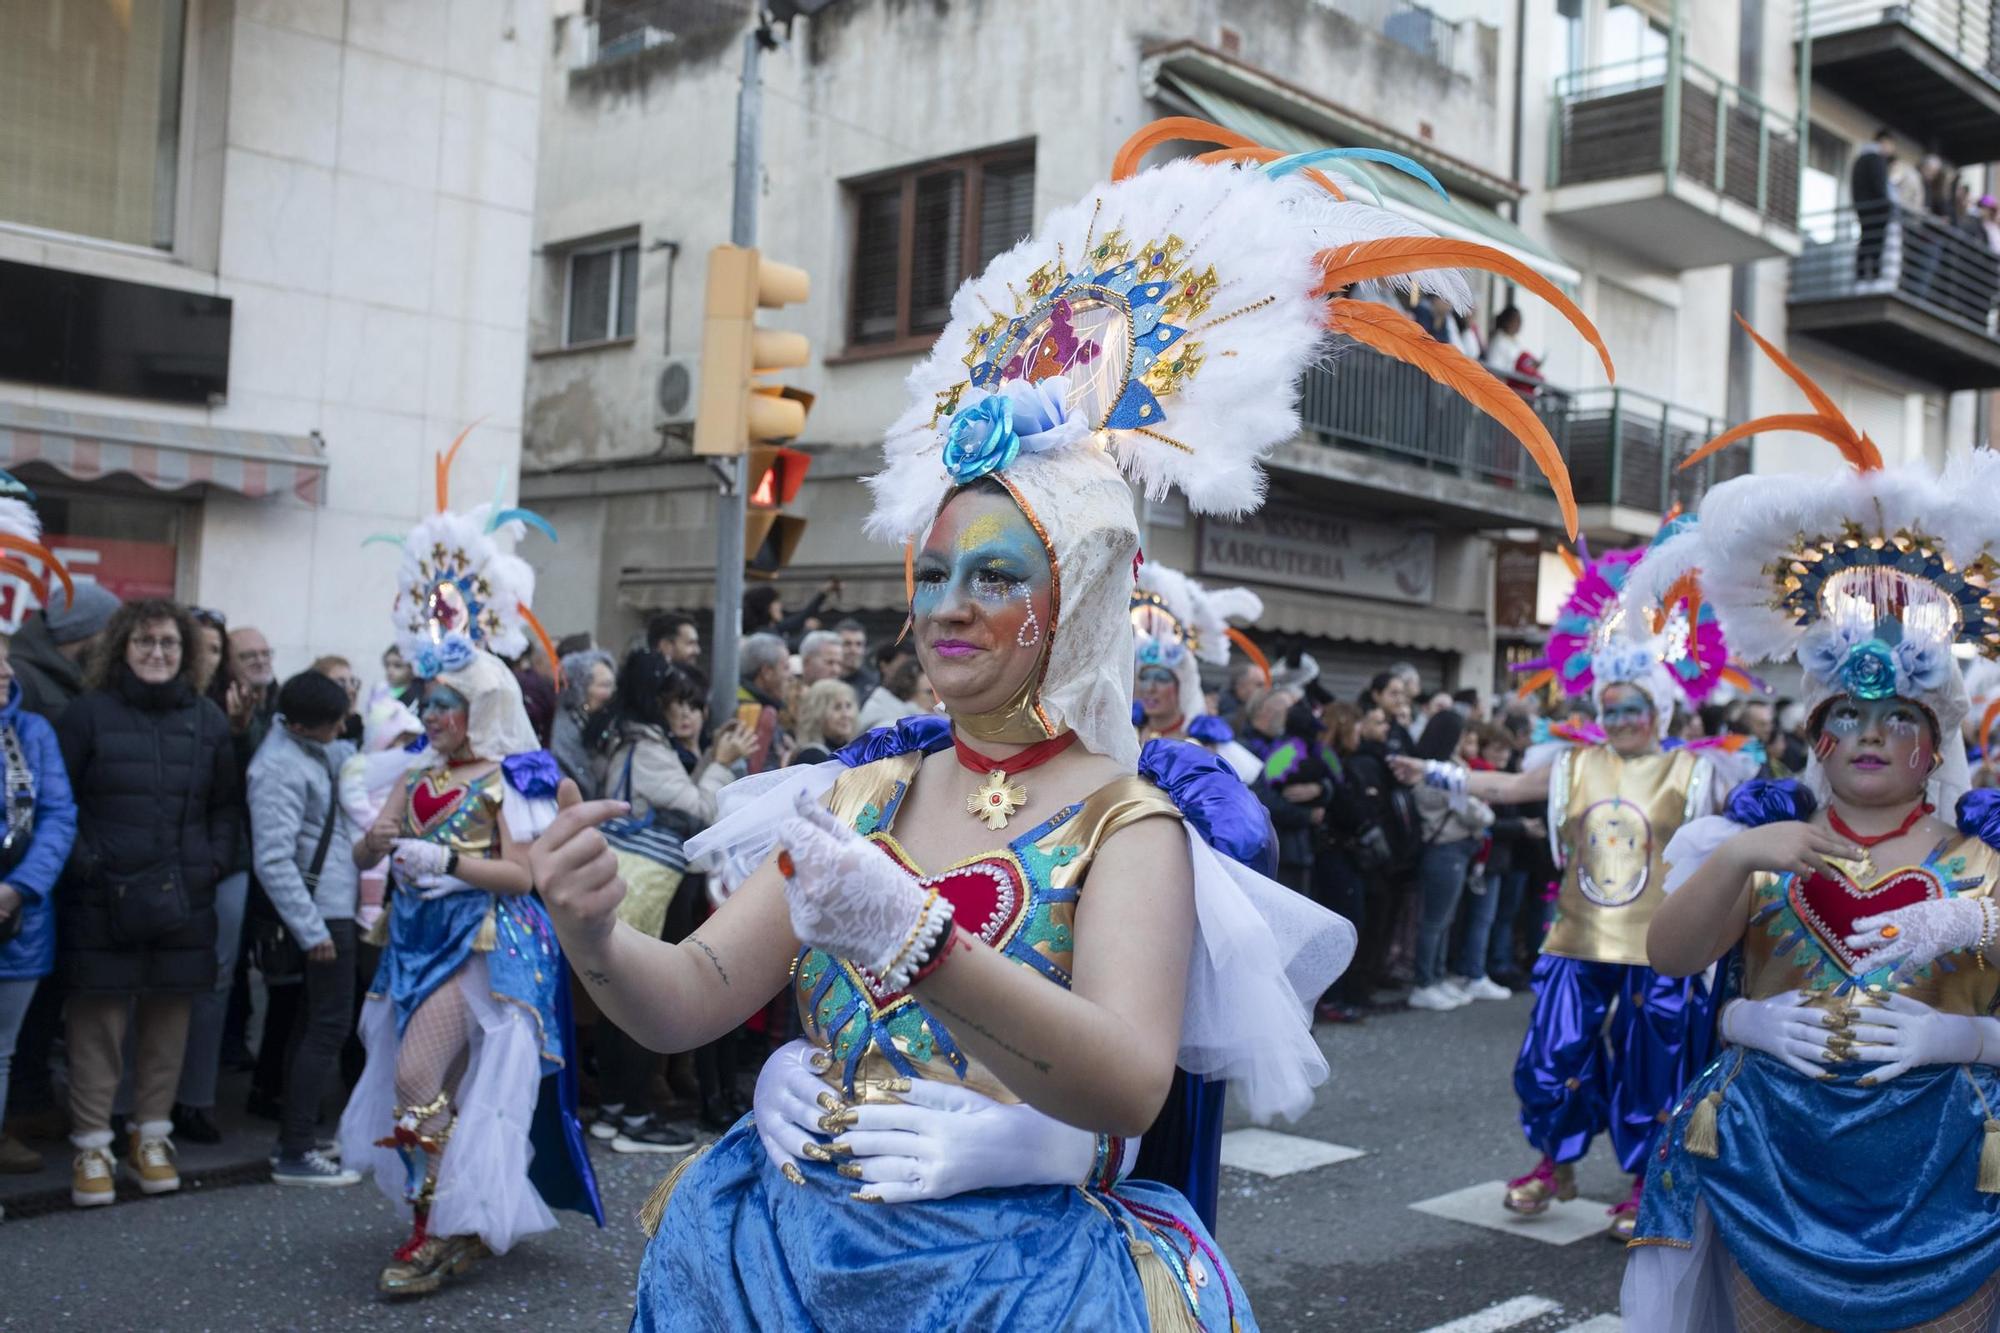 Busca't a les imatges del Carnaval de Blanes